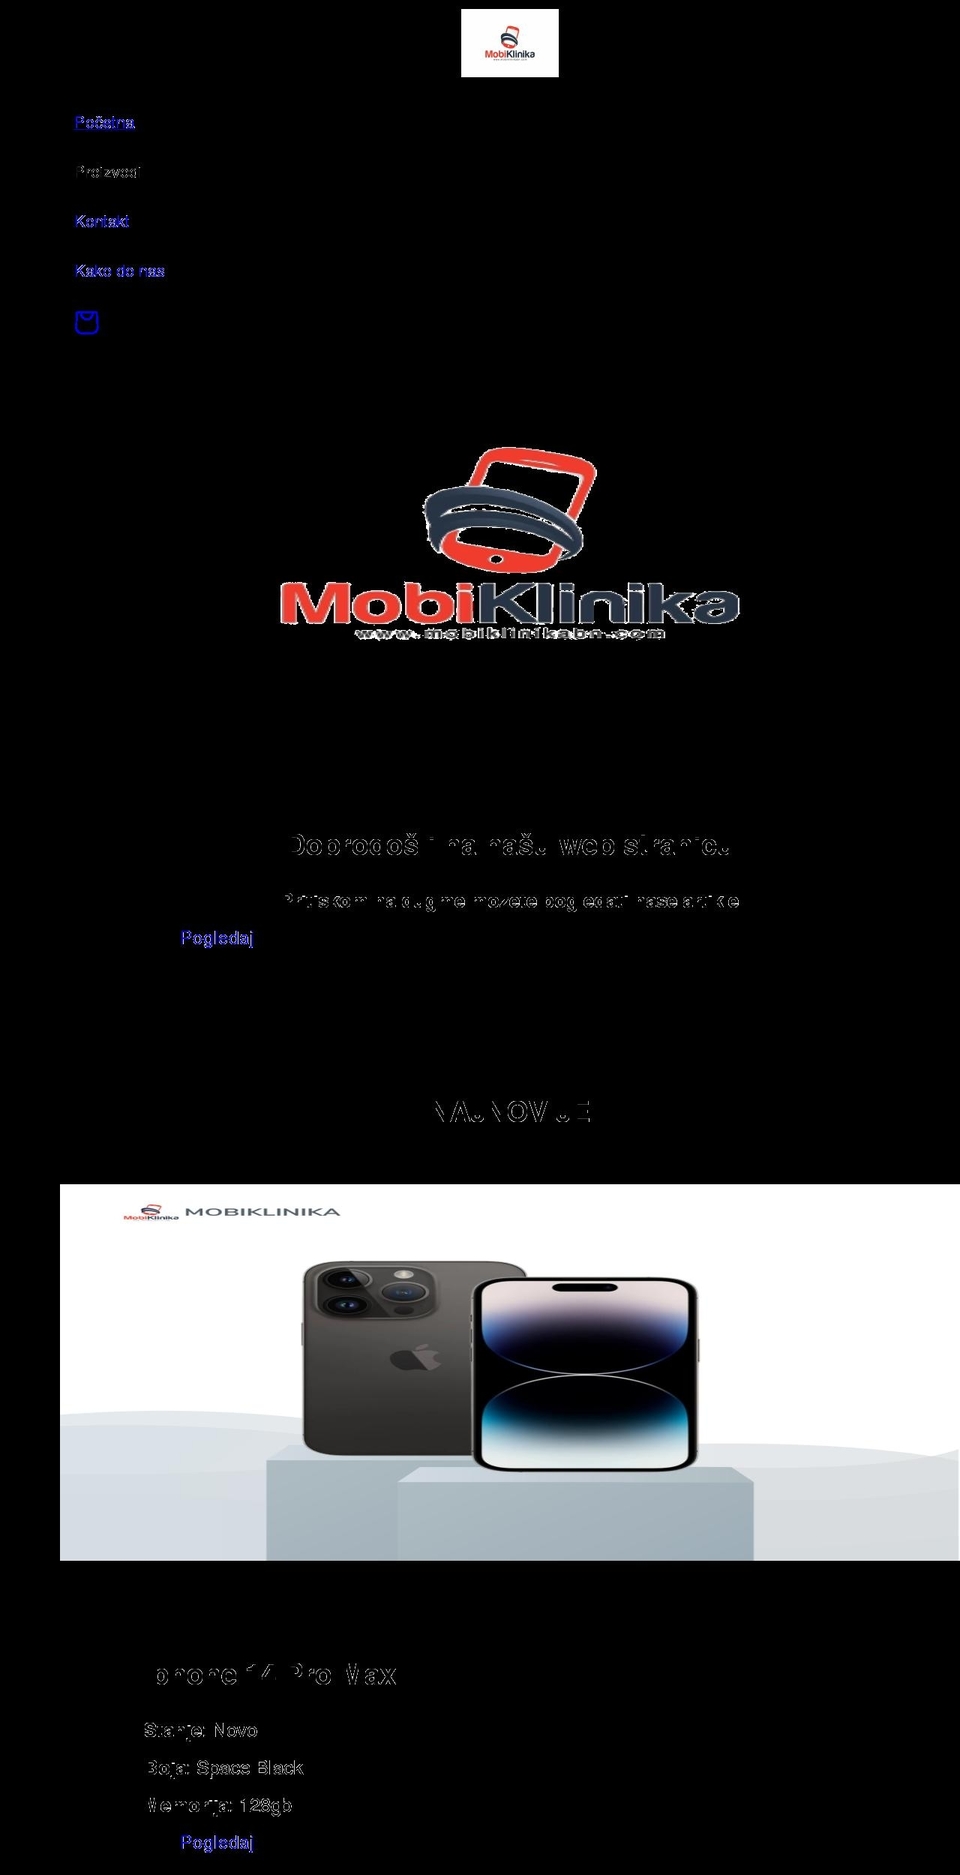 mobiklinikabn.com shopify website screenshot